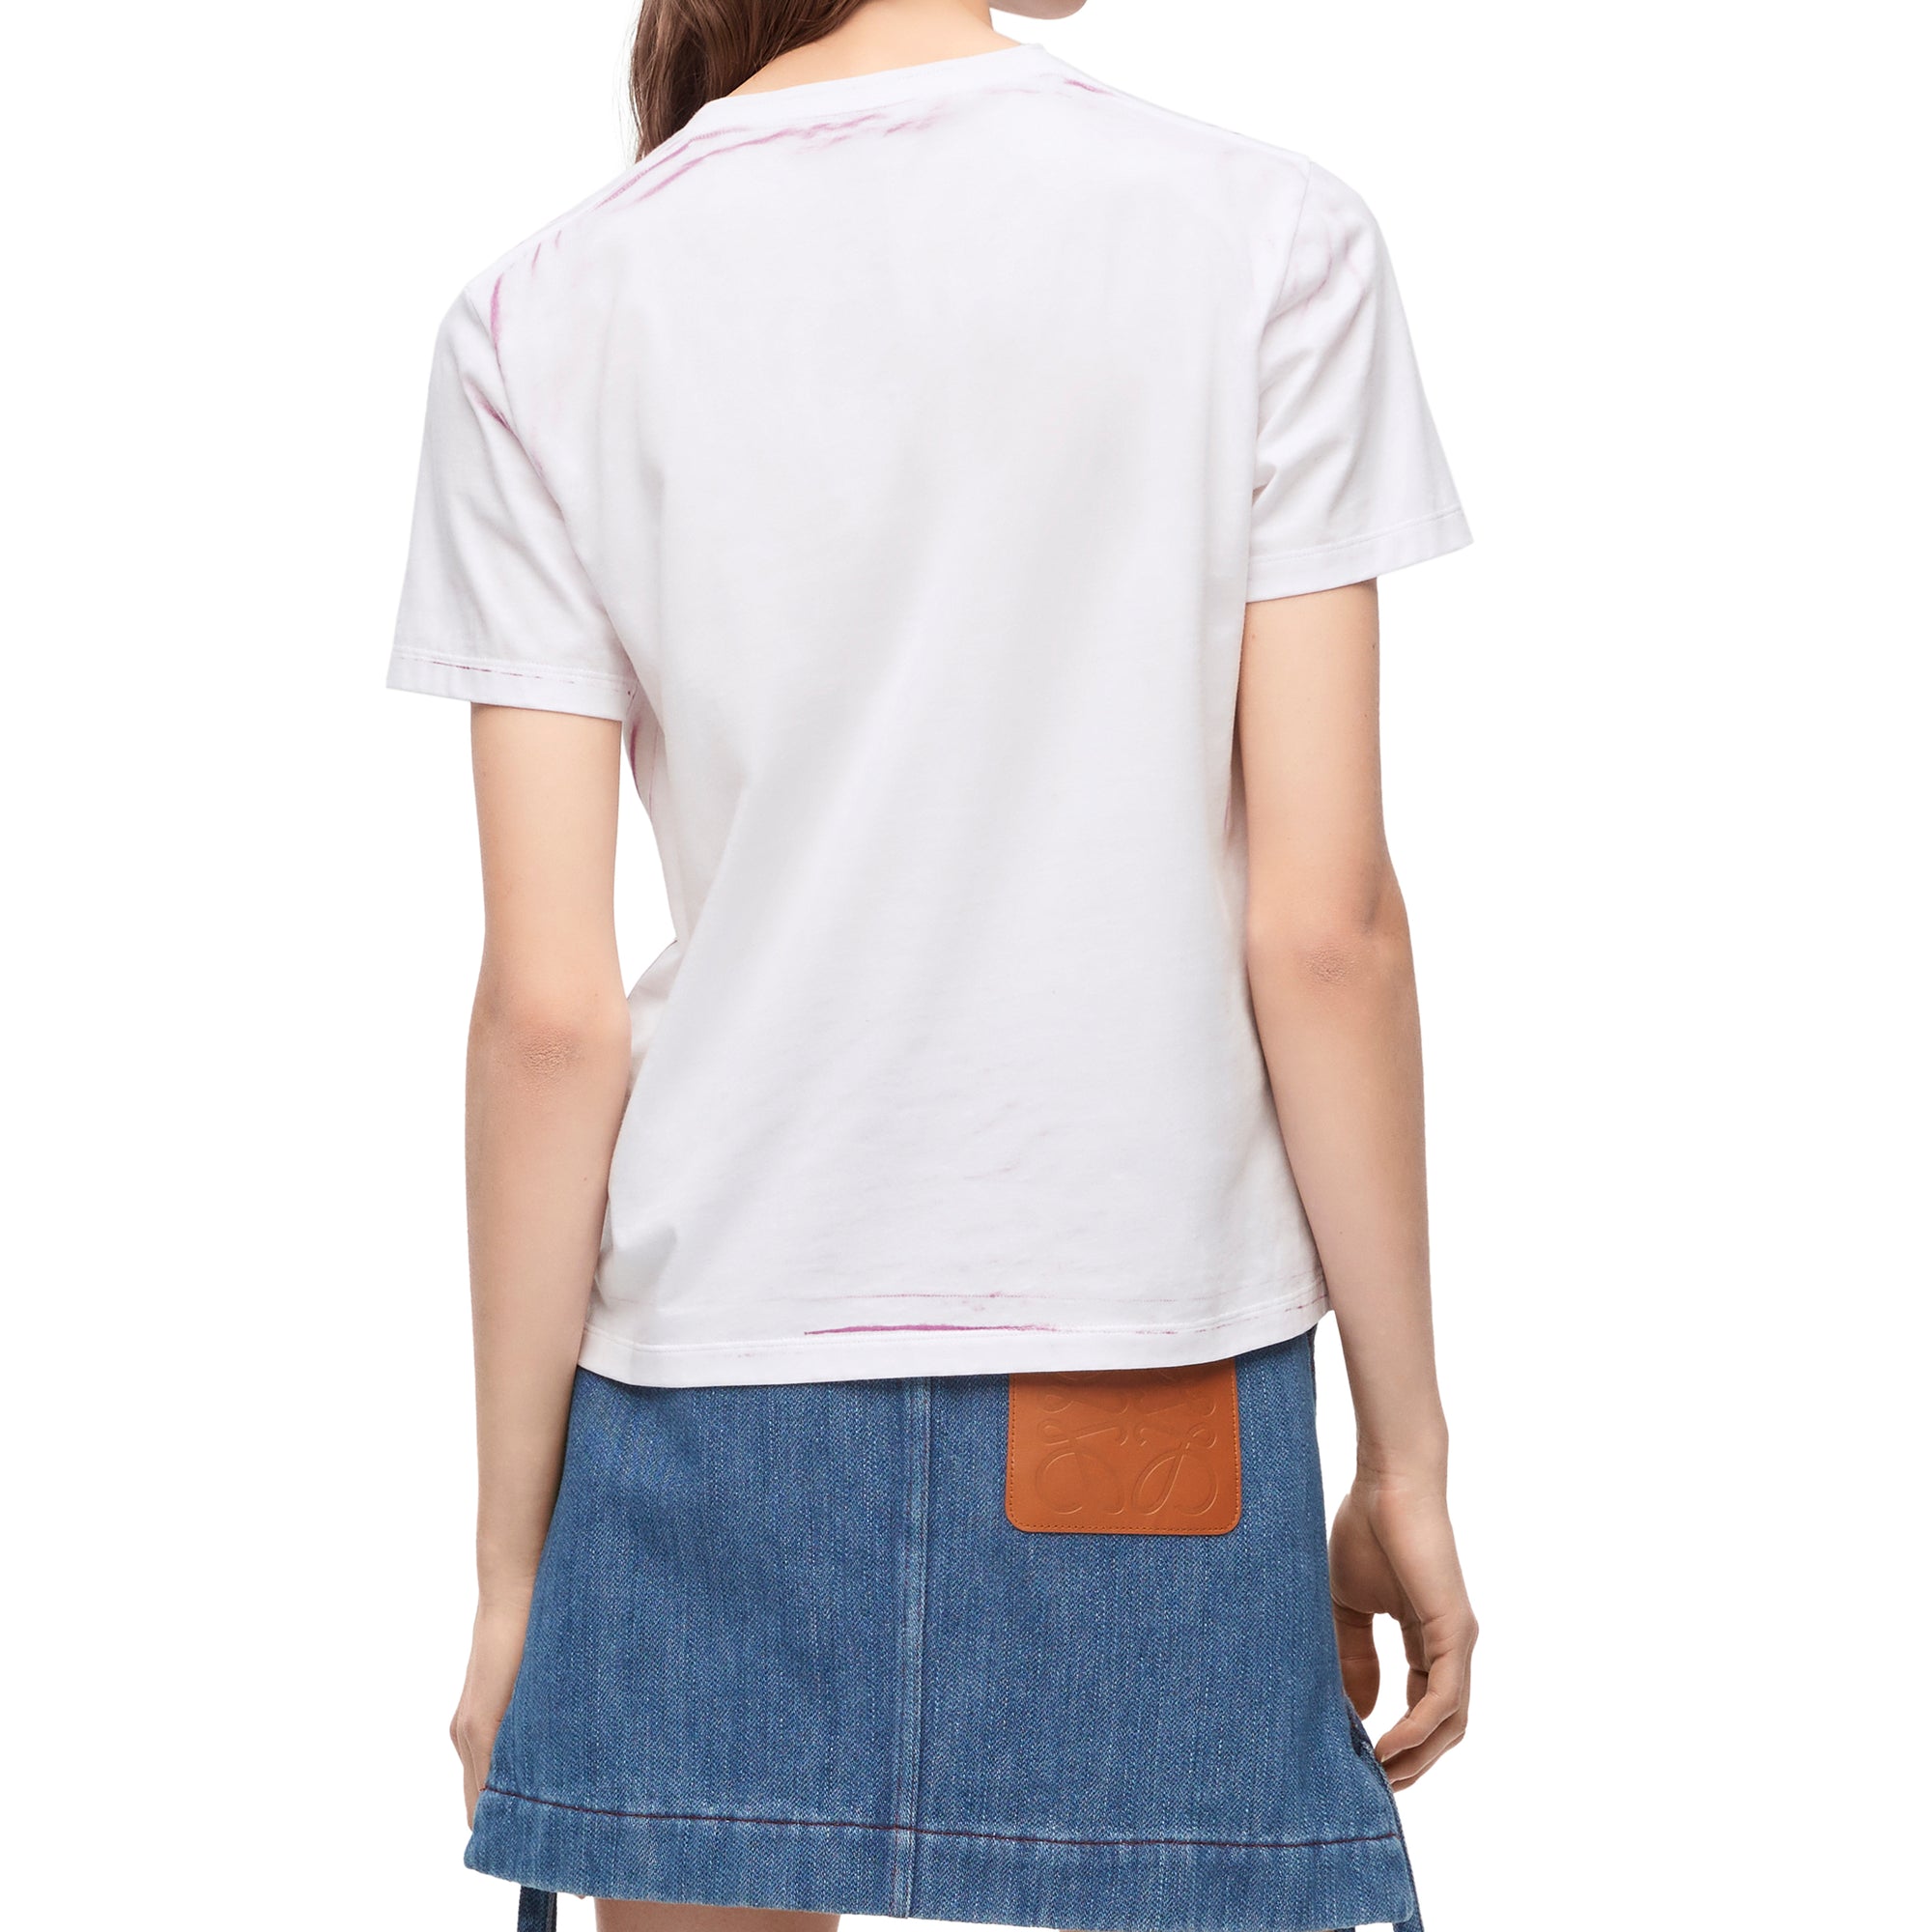 Loewe - Women’s Regular Fit T-Shirt - (White/Pink) view 4